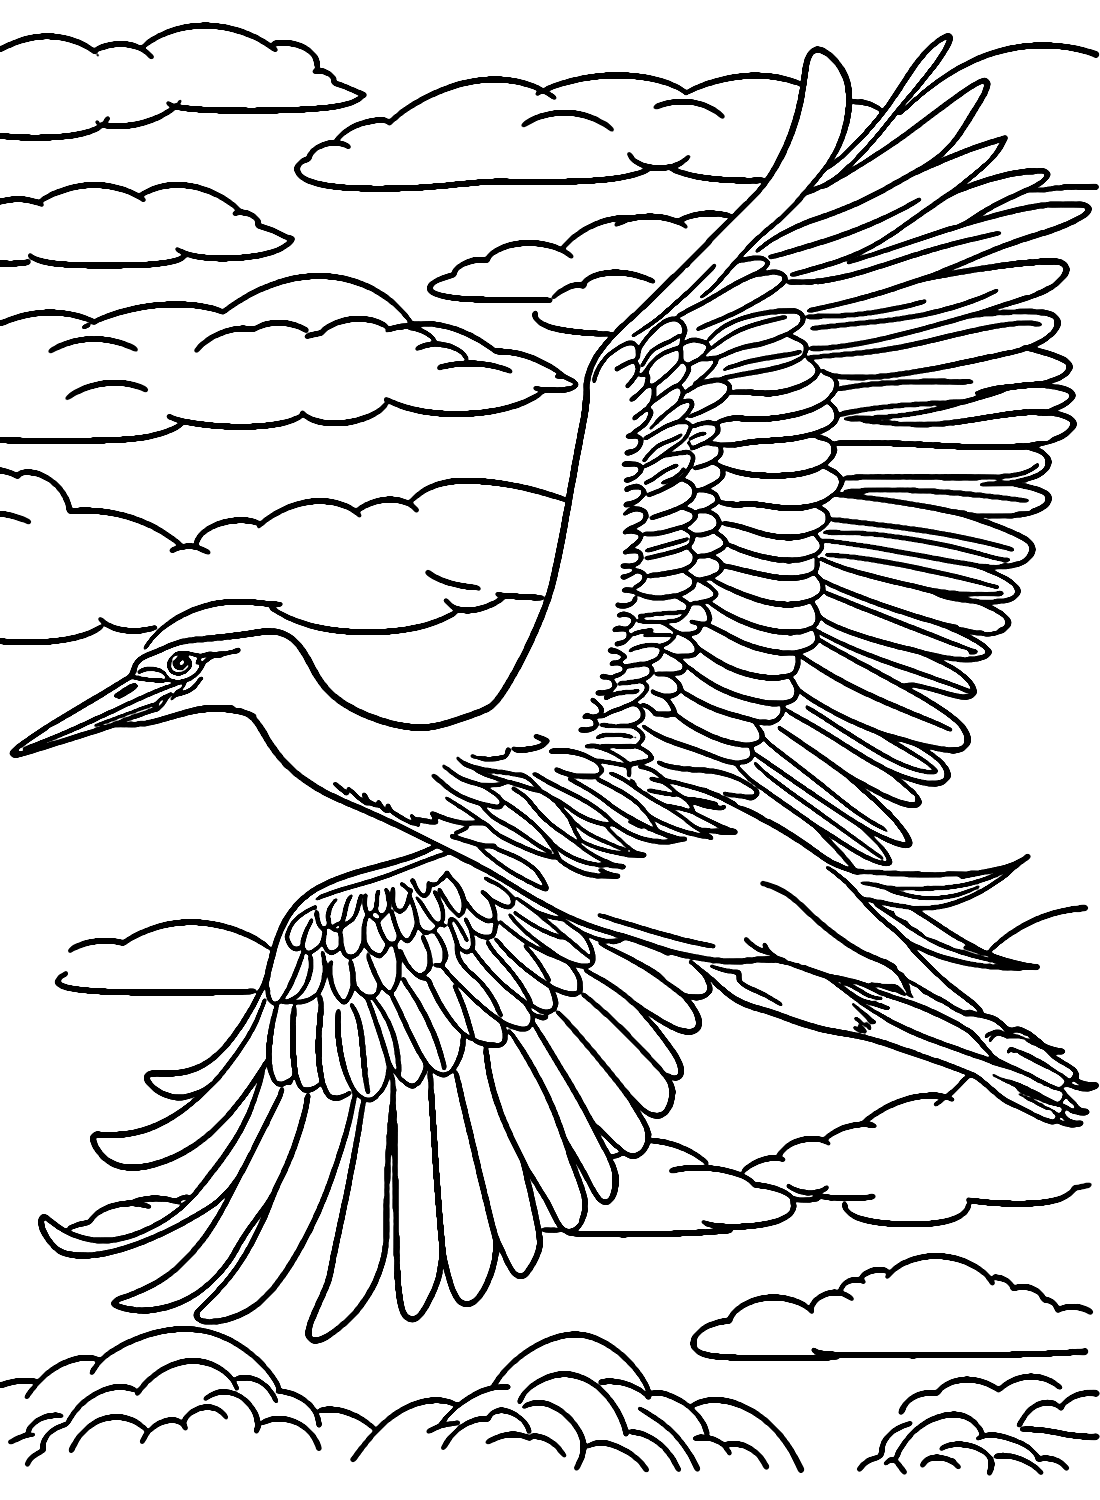 Heron déploie ses ailes dans le ciel depuis Heron